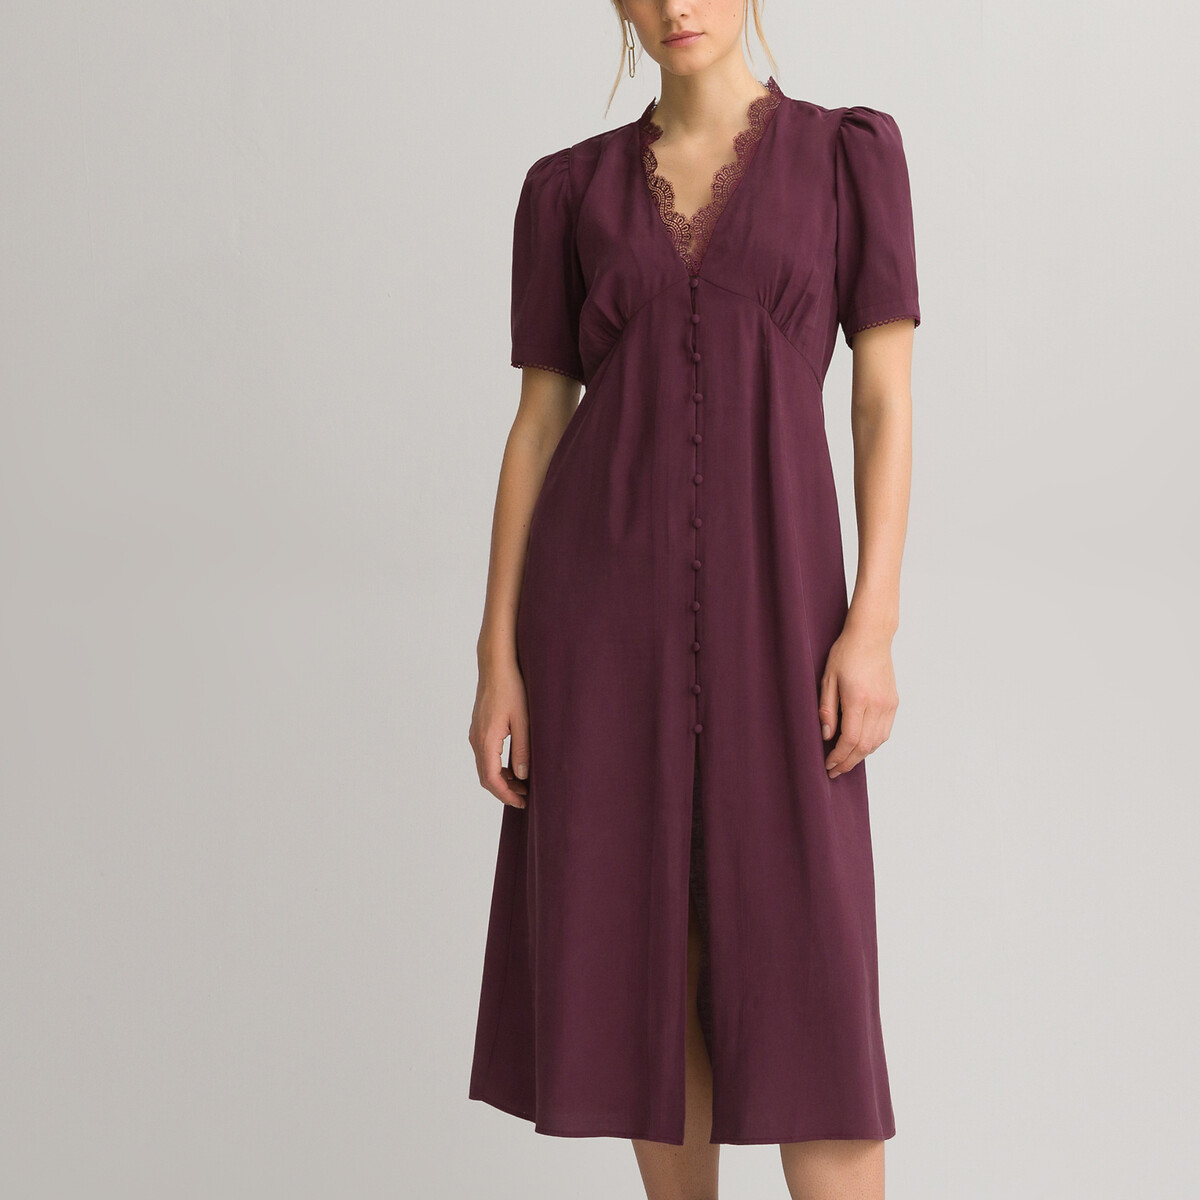 Платье LaRedoute Длинное V-образный вырез короткие рукава 42 красный, размер 42 - фото 1